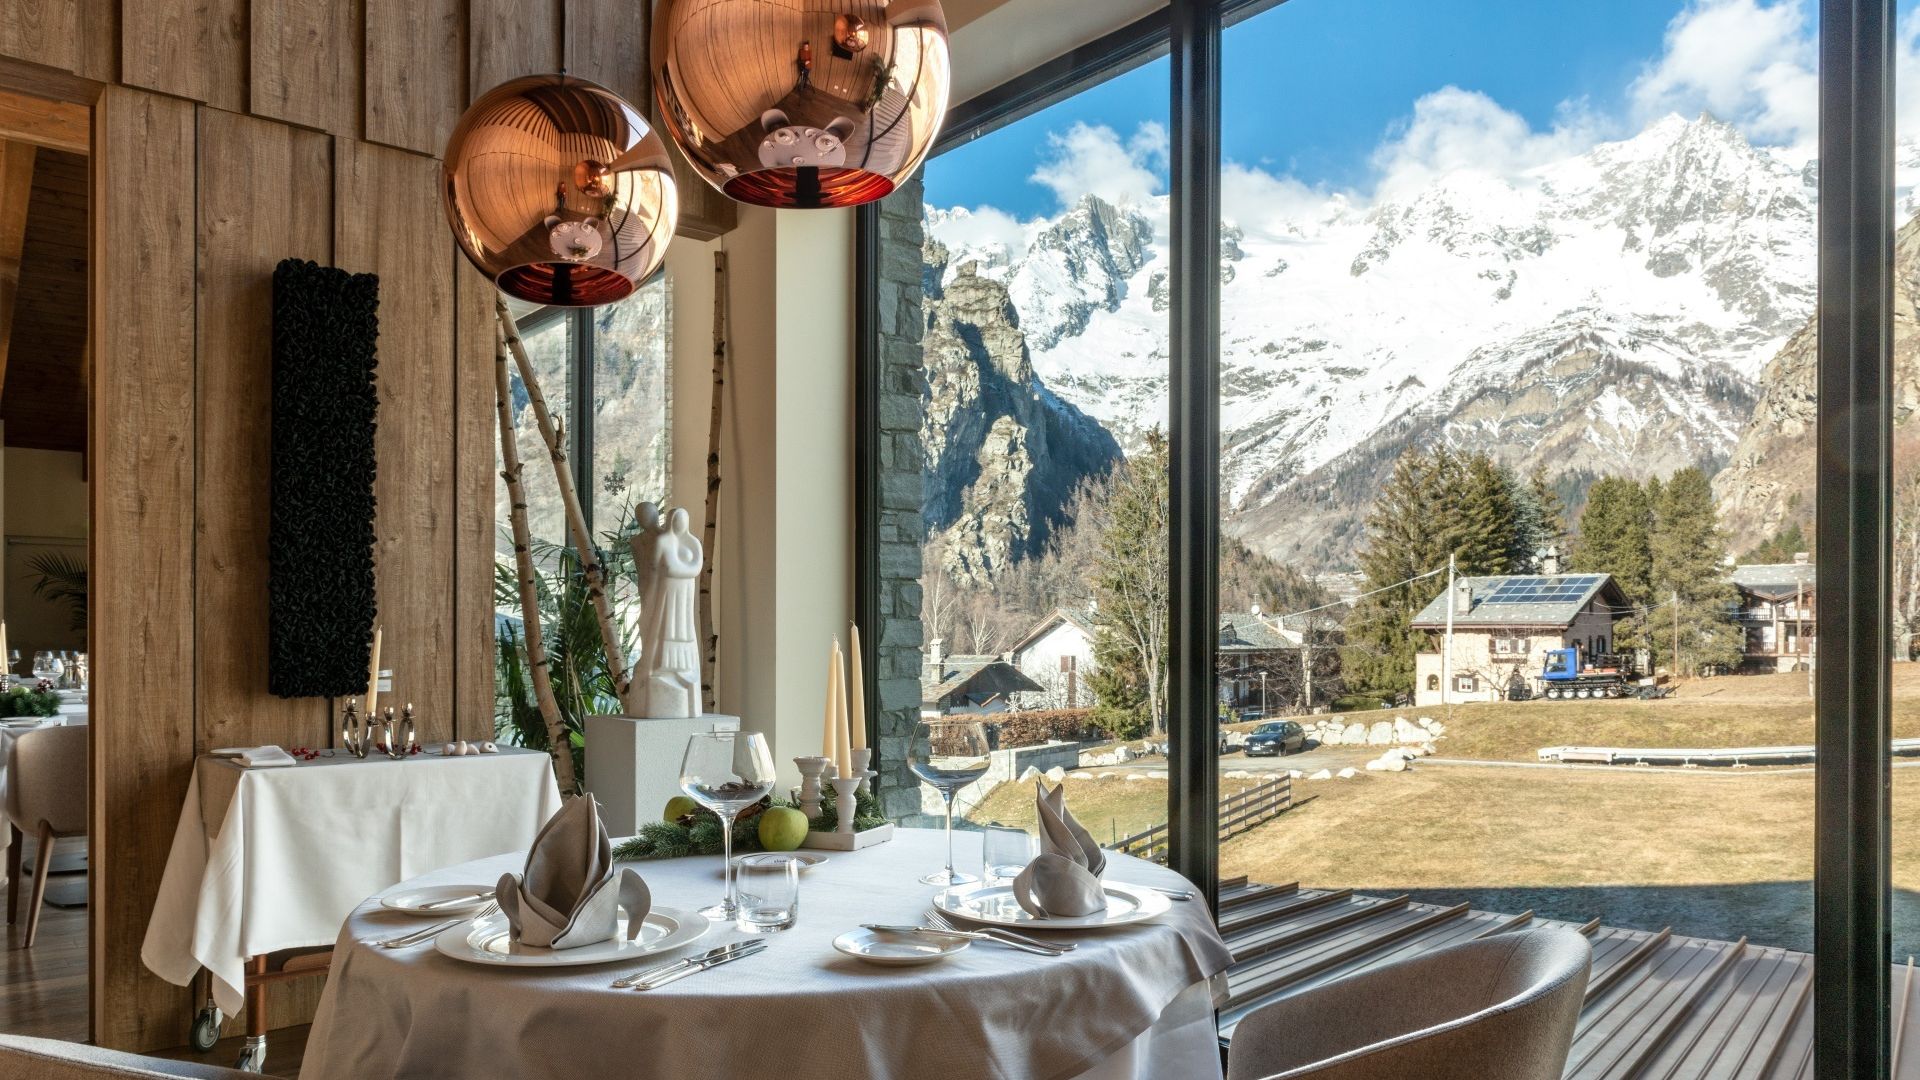 Grand Hotel Courmayeur Mont Blanc, Courmayeur - Aosta